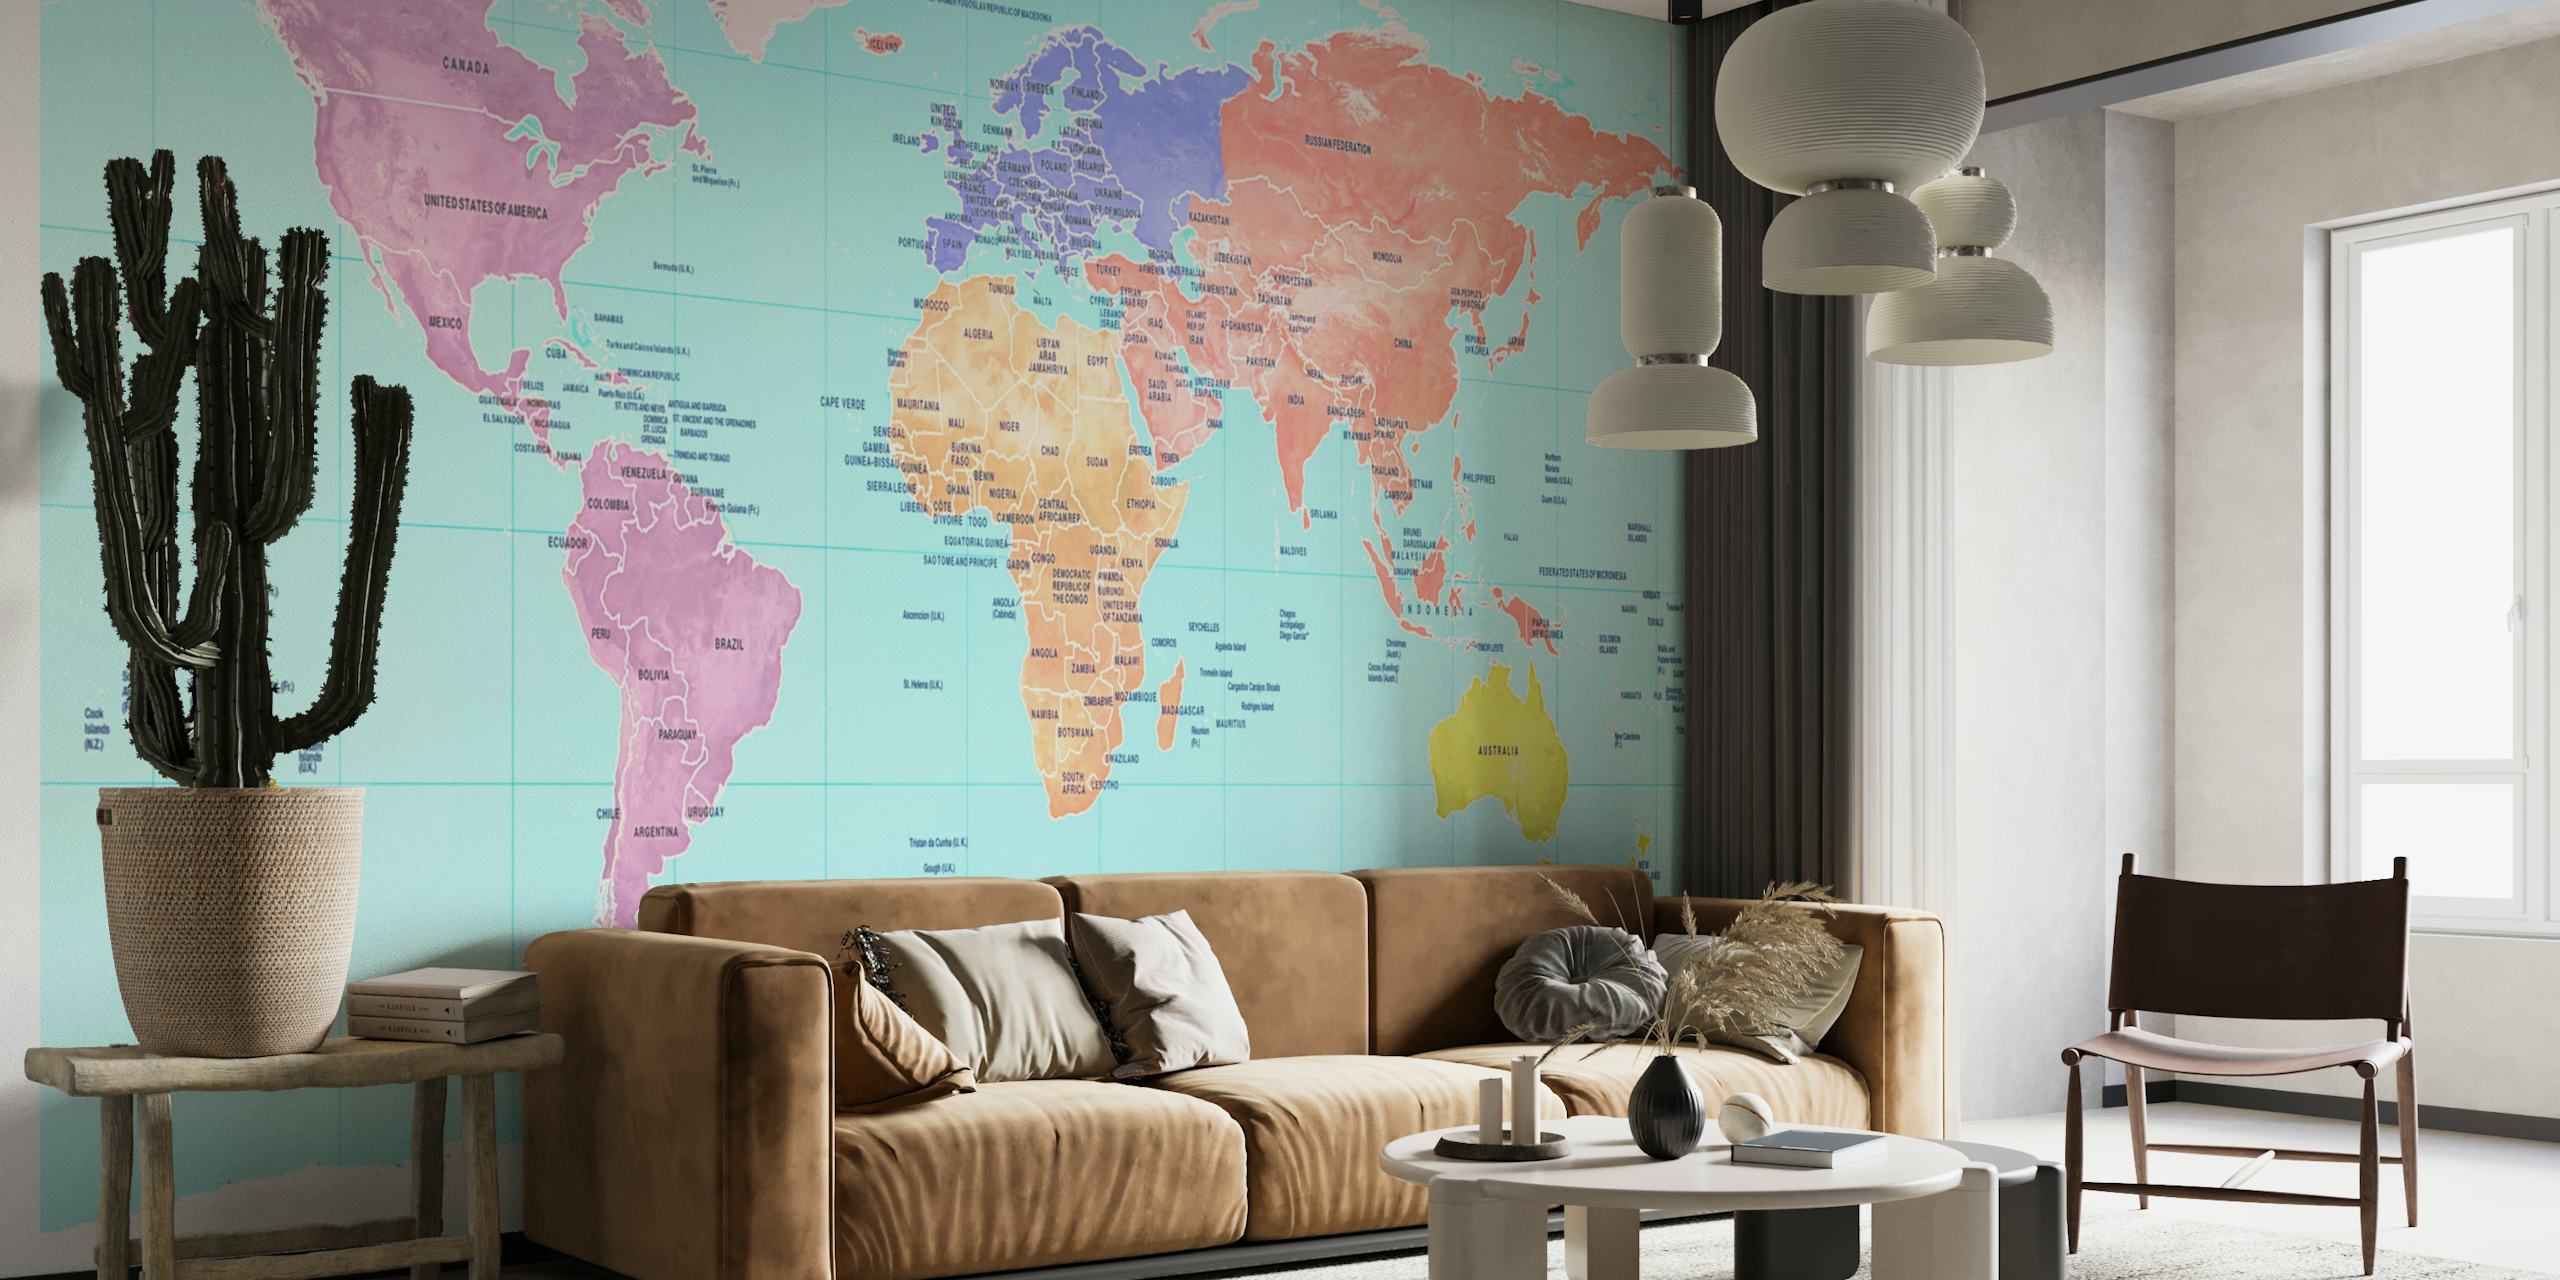 Fotomural vinílico colorido de mapa-múndi mostrando continentes em tons diferentes